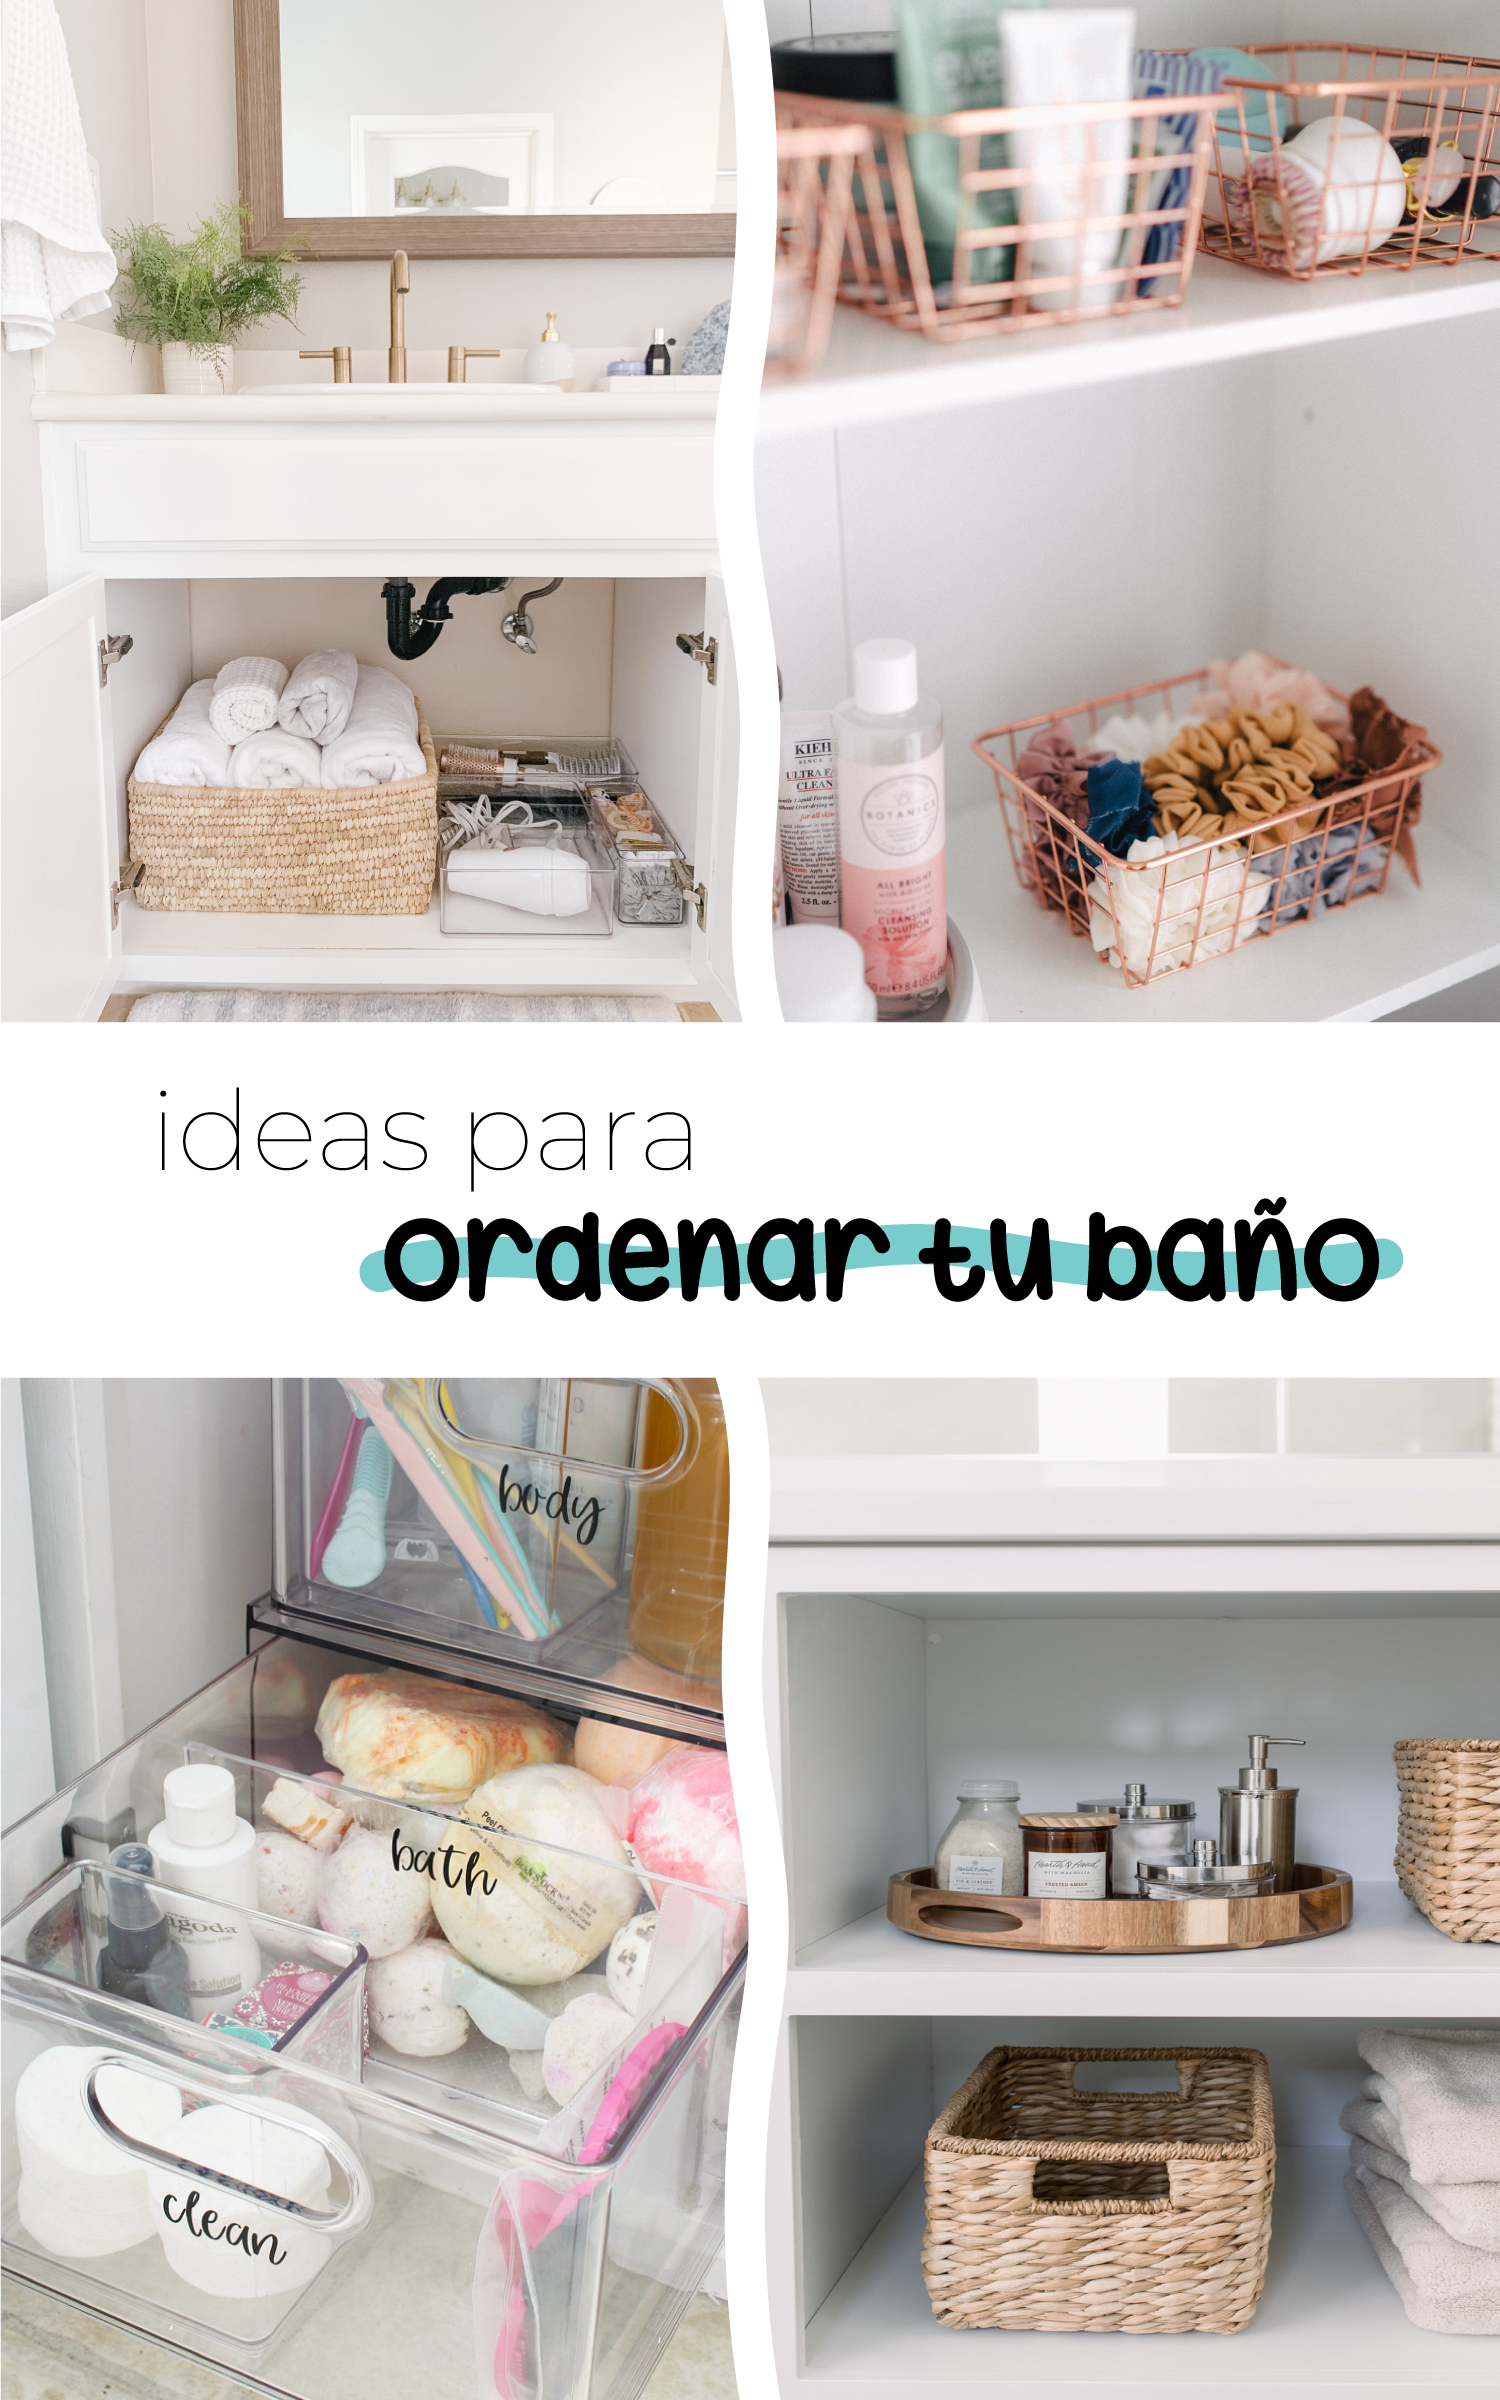 Orden en el baño: consejos para organizar y guardar los productos